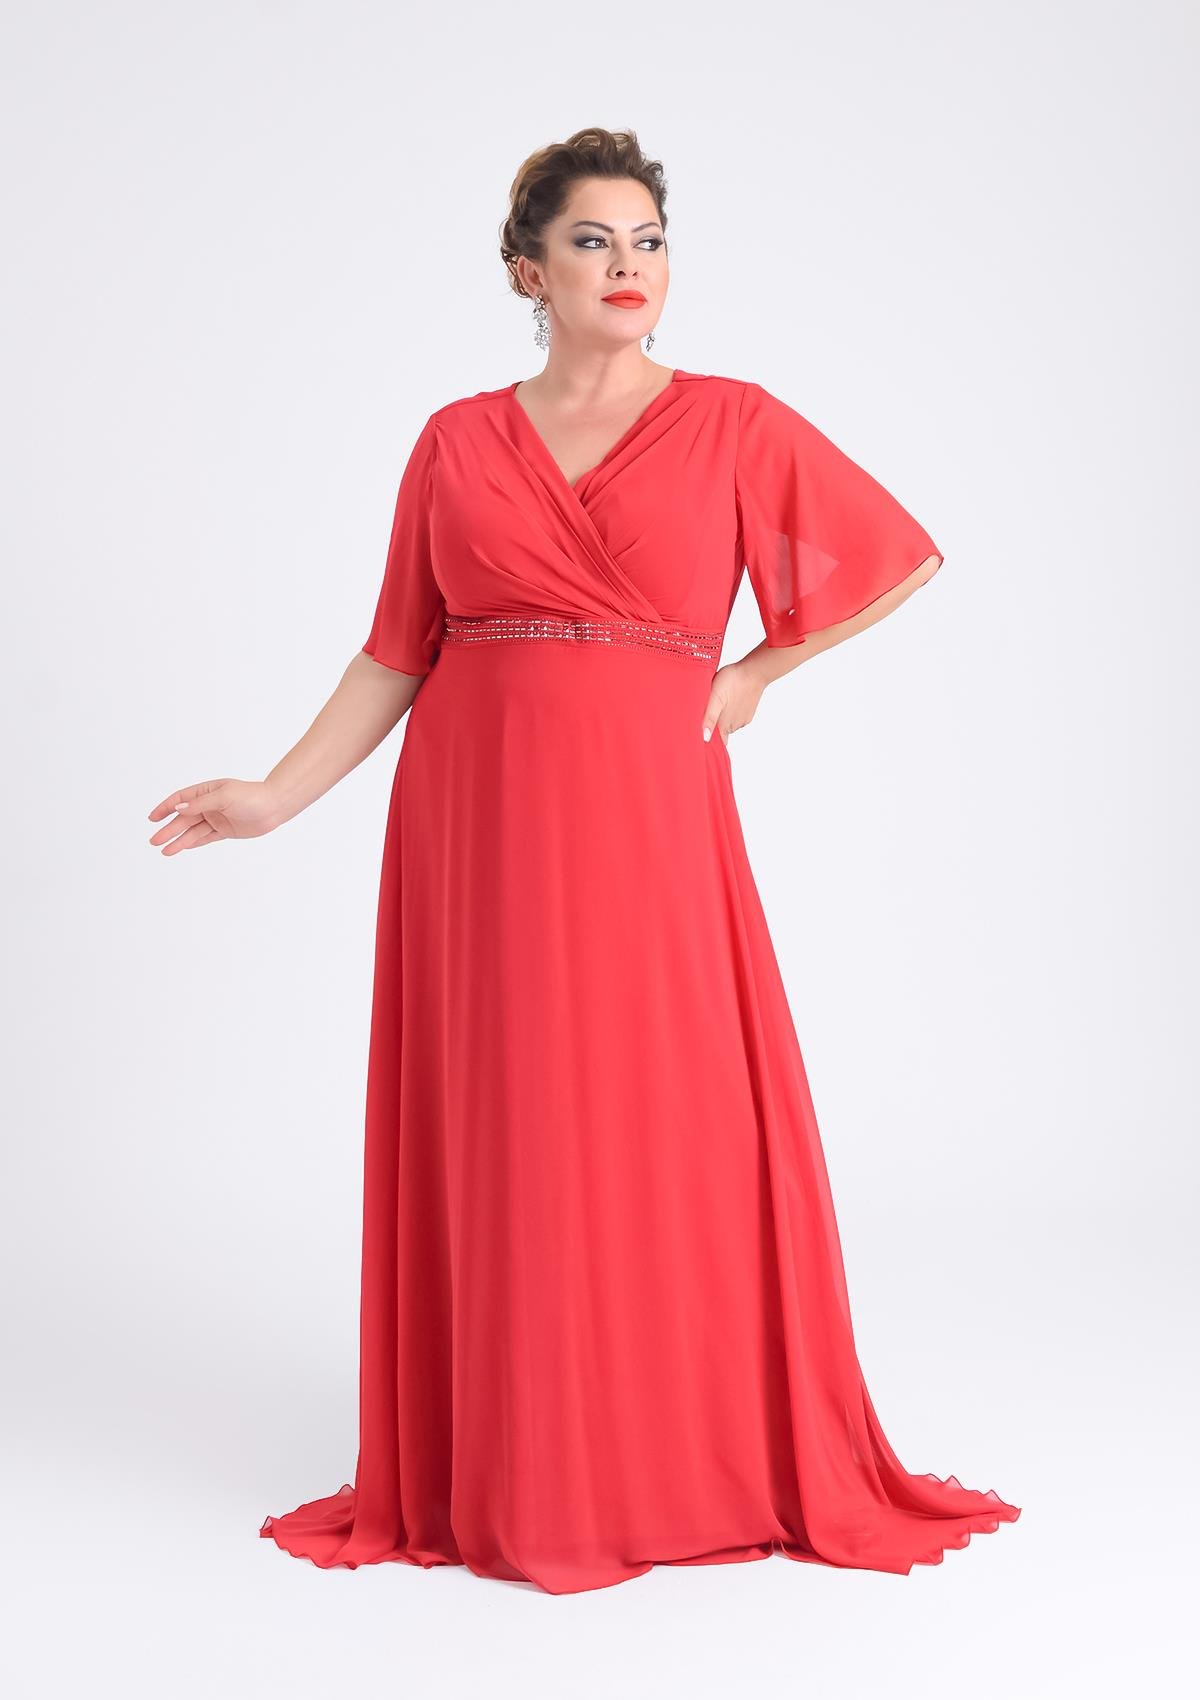 Büyük Beden Kırmızı Renkli Uzun Şifon Elbise - LilasXXL